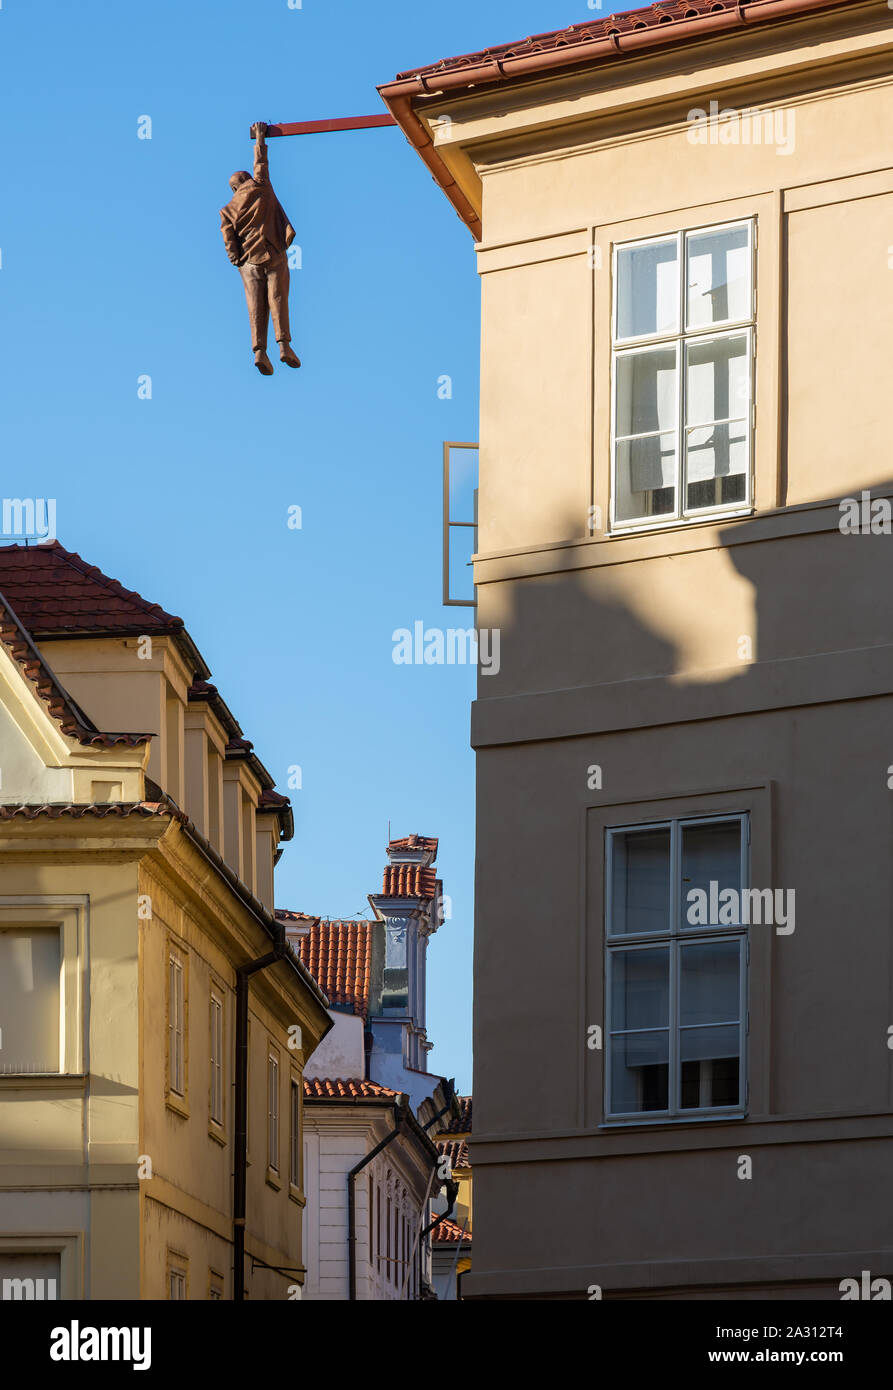 Prag, tschechische Republik - 3. SEPTEMBER: Hängende mann Skulptur in Prag, Tschechische Republik am 3. September 2019. Die Abbildung von David Cerny, gebaut 1997 sh Stockfoto